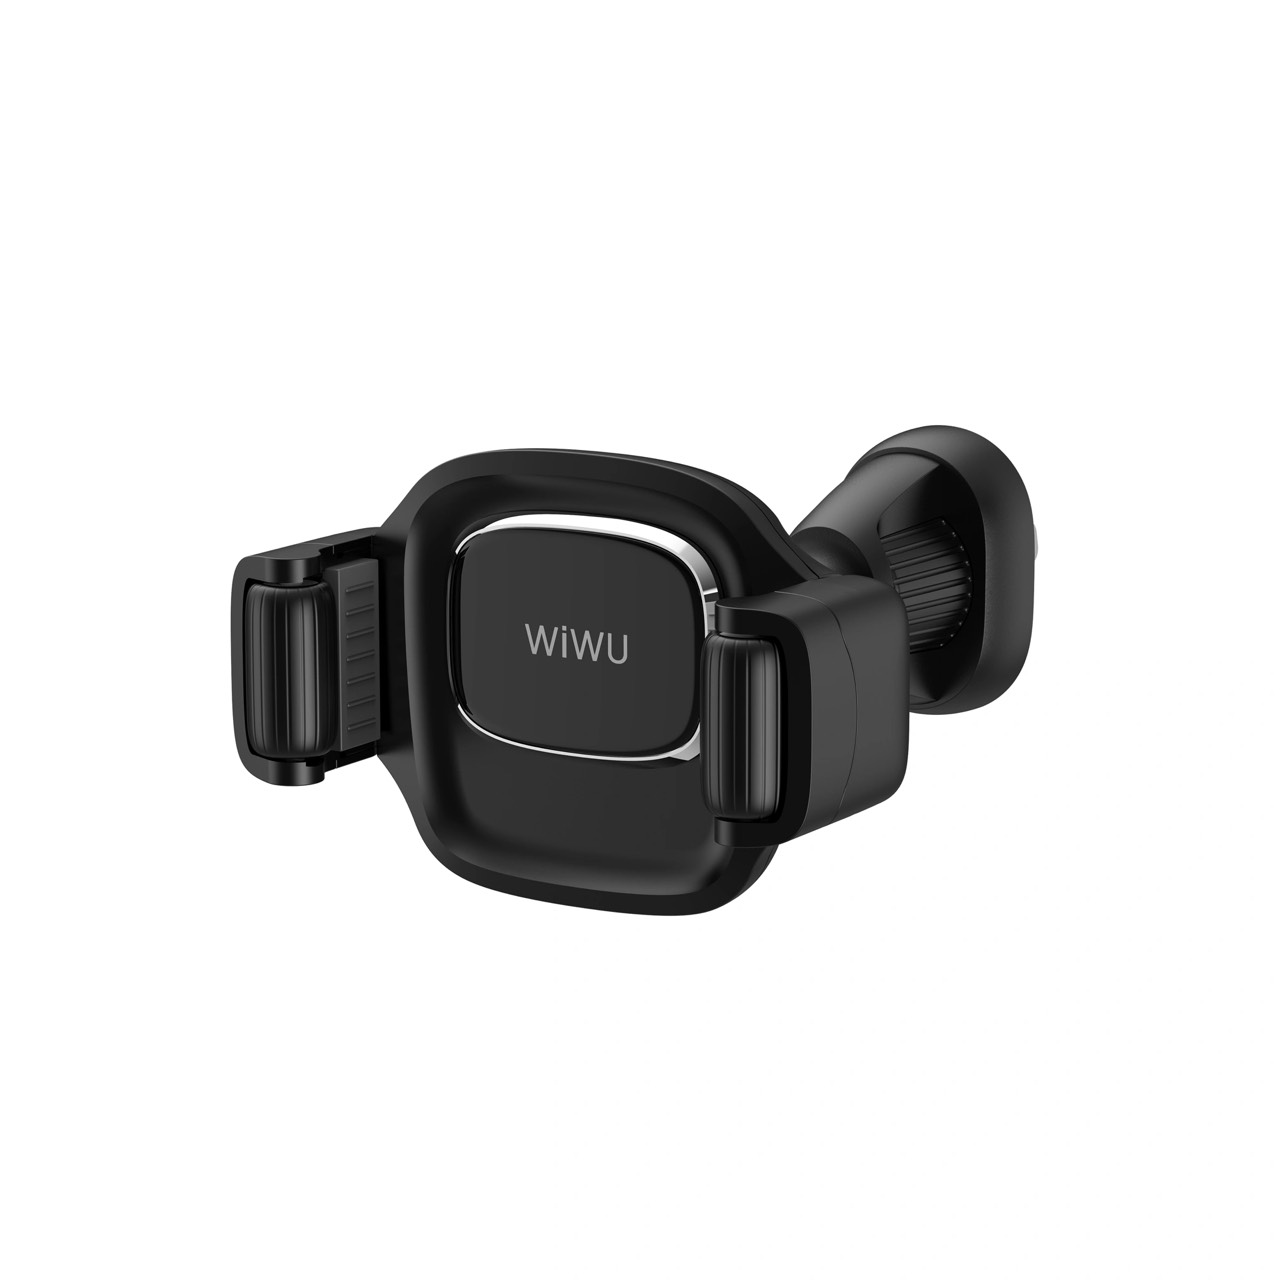 Giá đỡ Wiwu Ch009 Car Mount cho điện thoại trên ô tô làm bằng hợp kim nhôm, xoay 360 độ - Hàng chính hãng